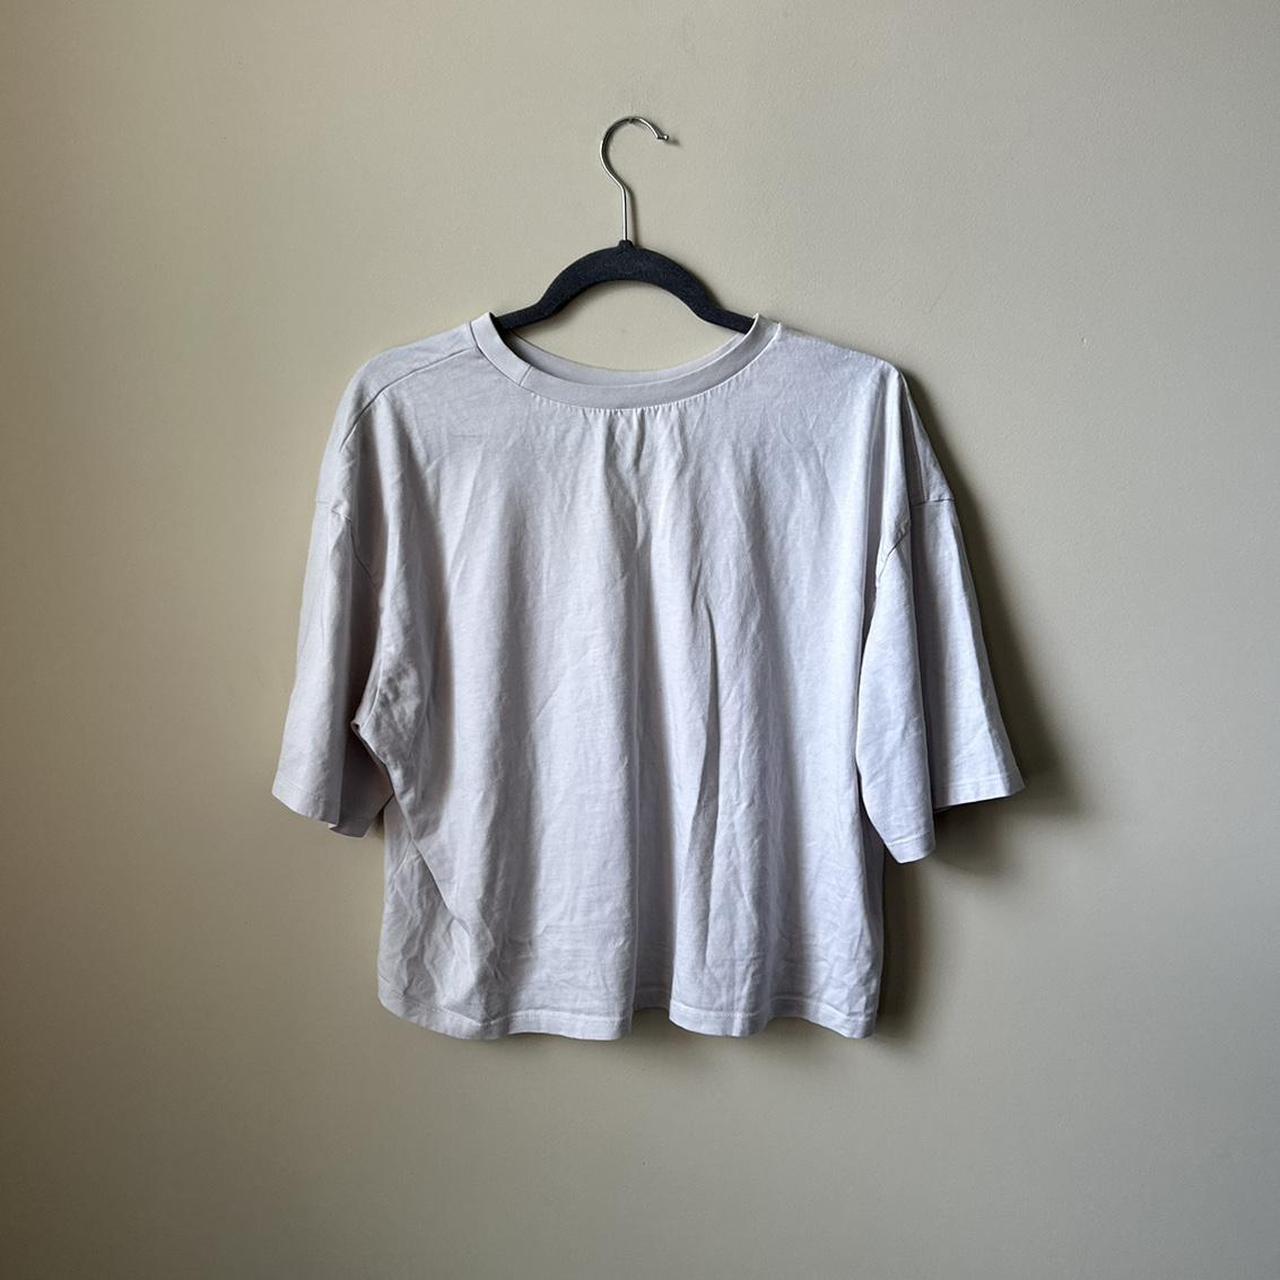 BP Women's Cream and White T-shirt (3)